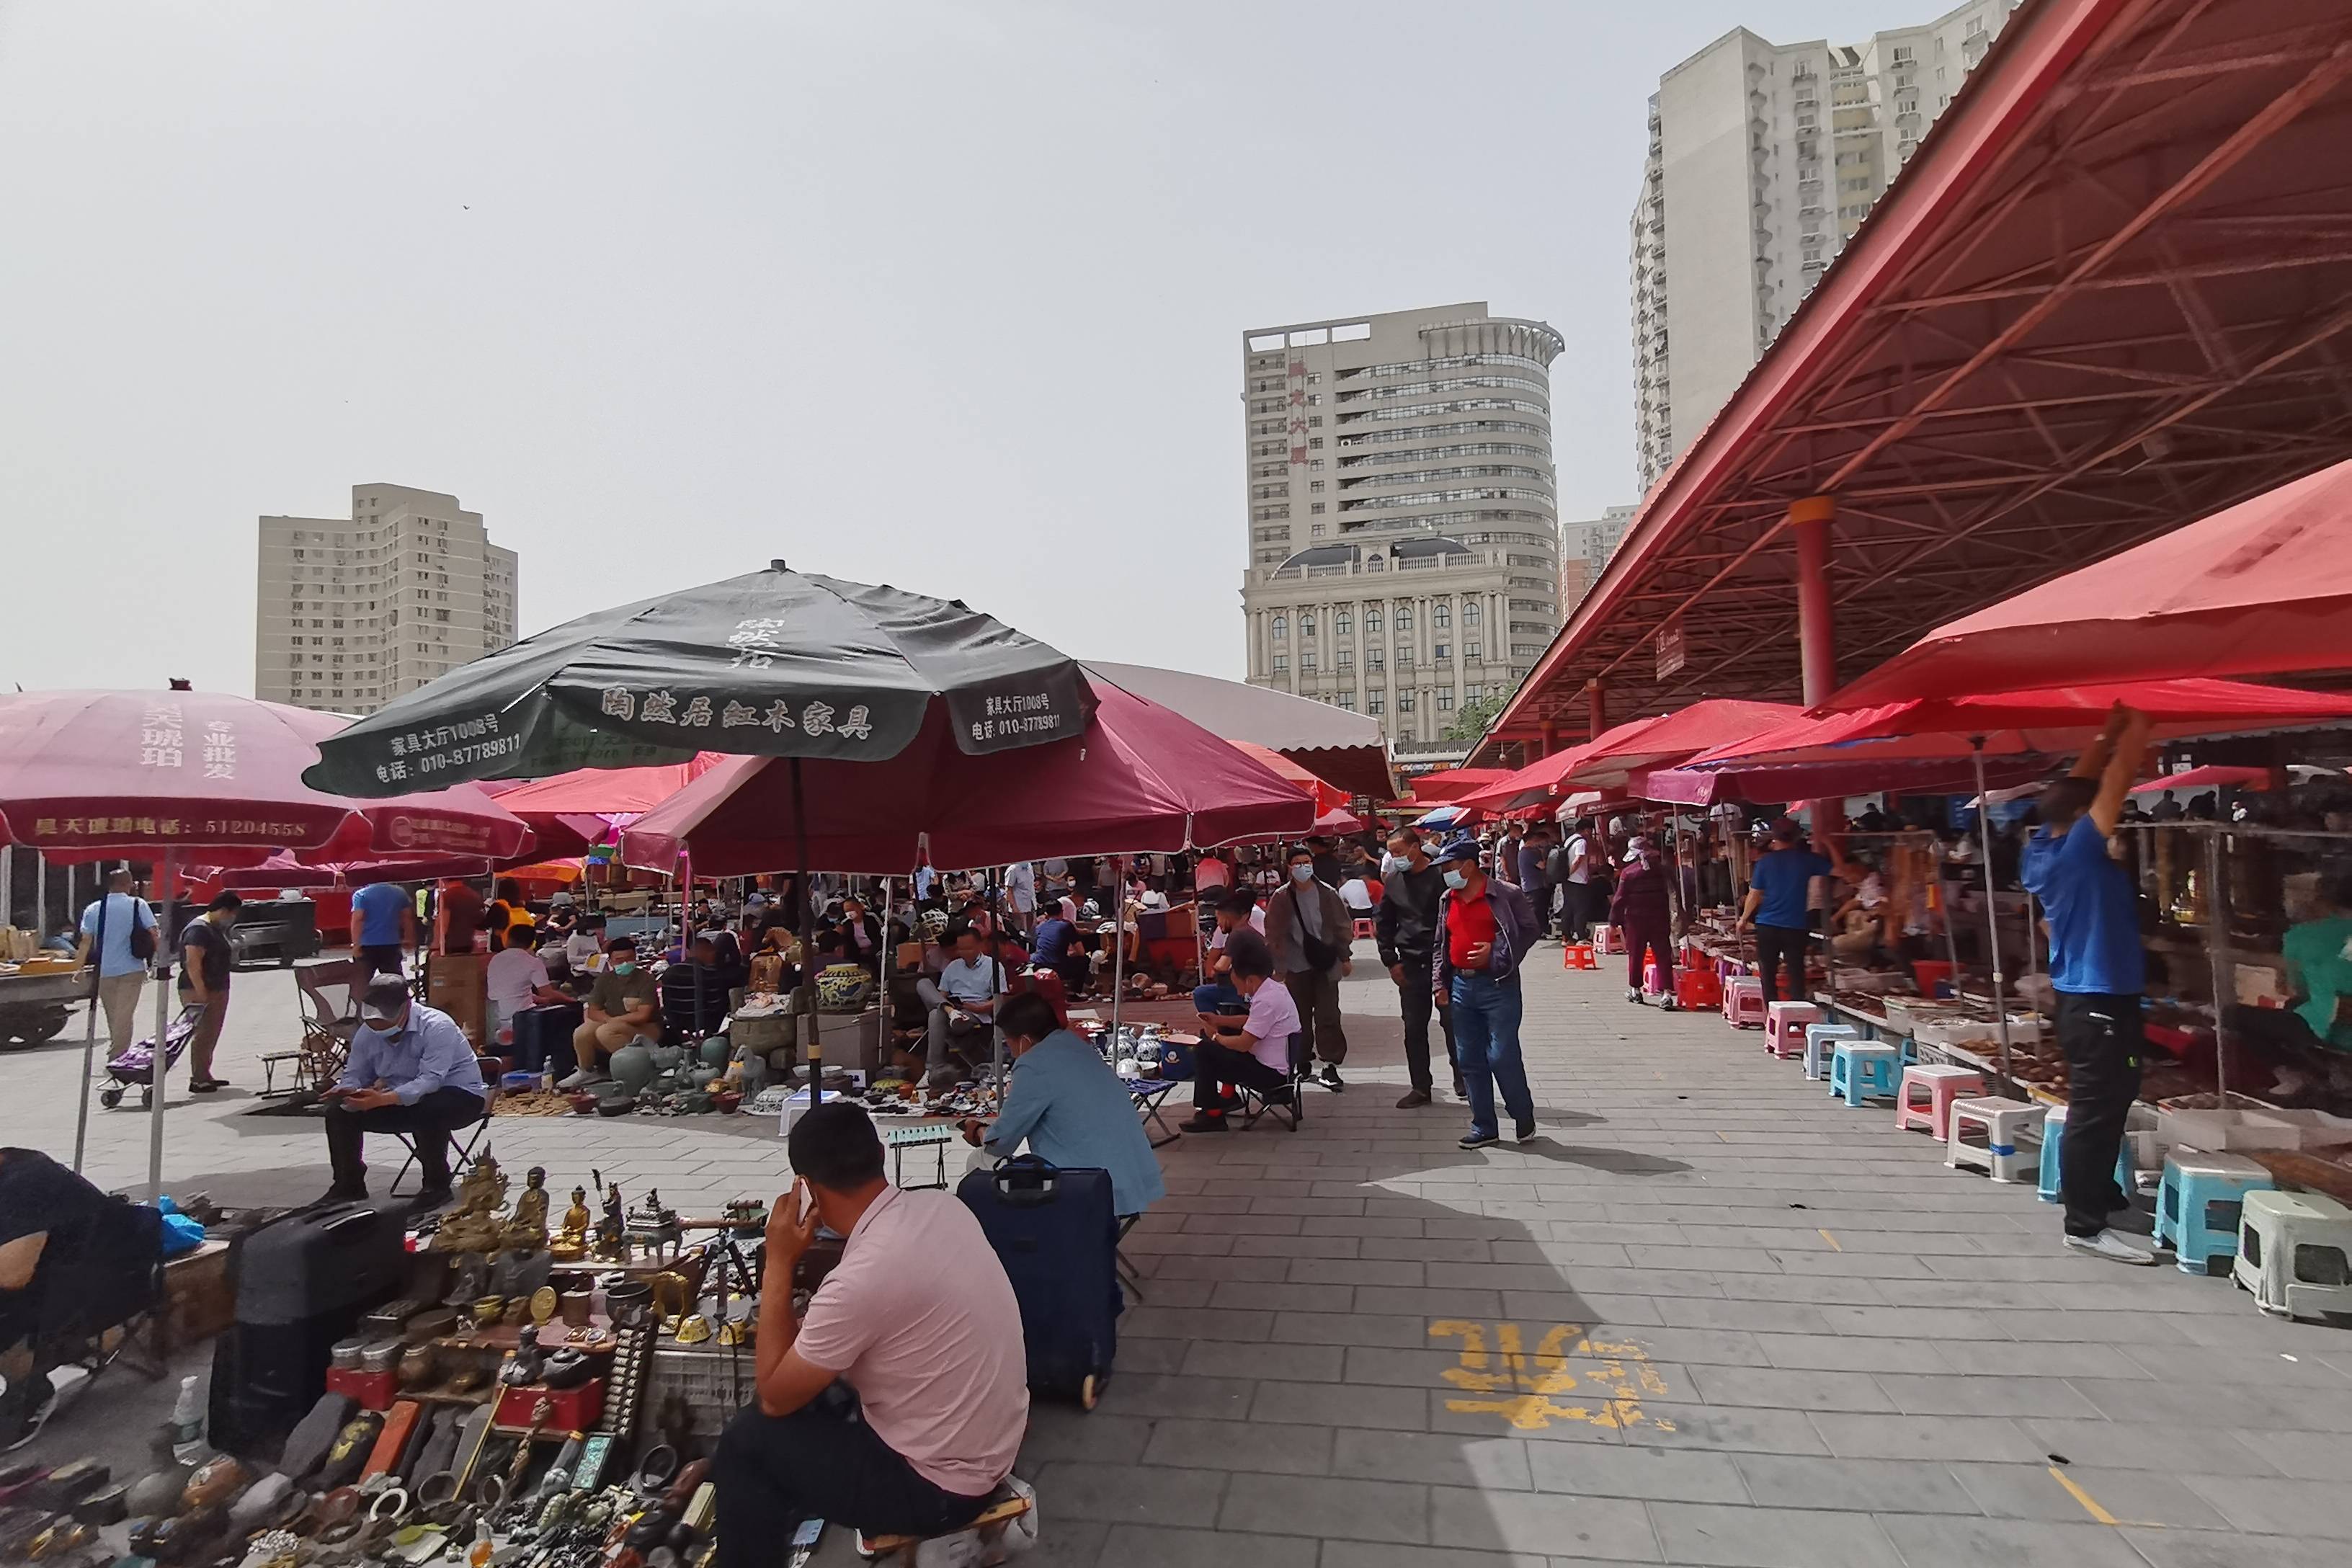 实拍北京潘家园旧货市场,正举办大型展览,摊位都营业,很热闹